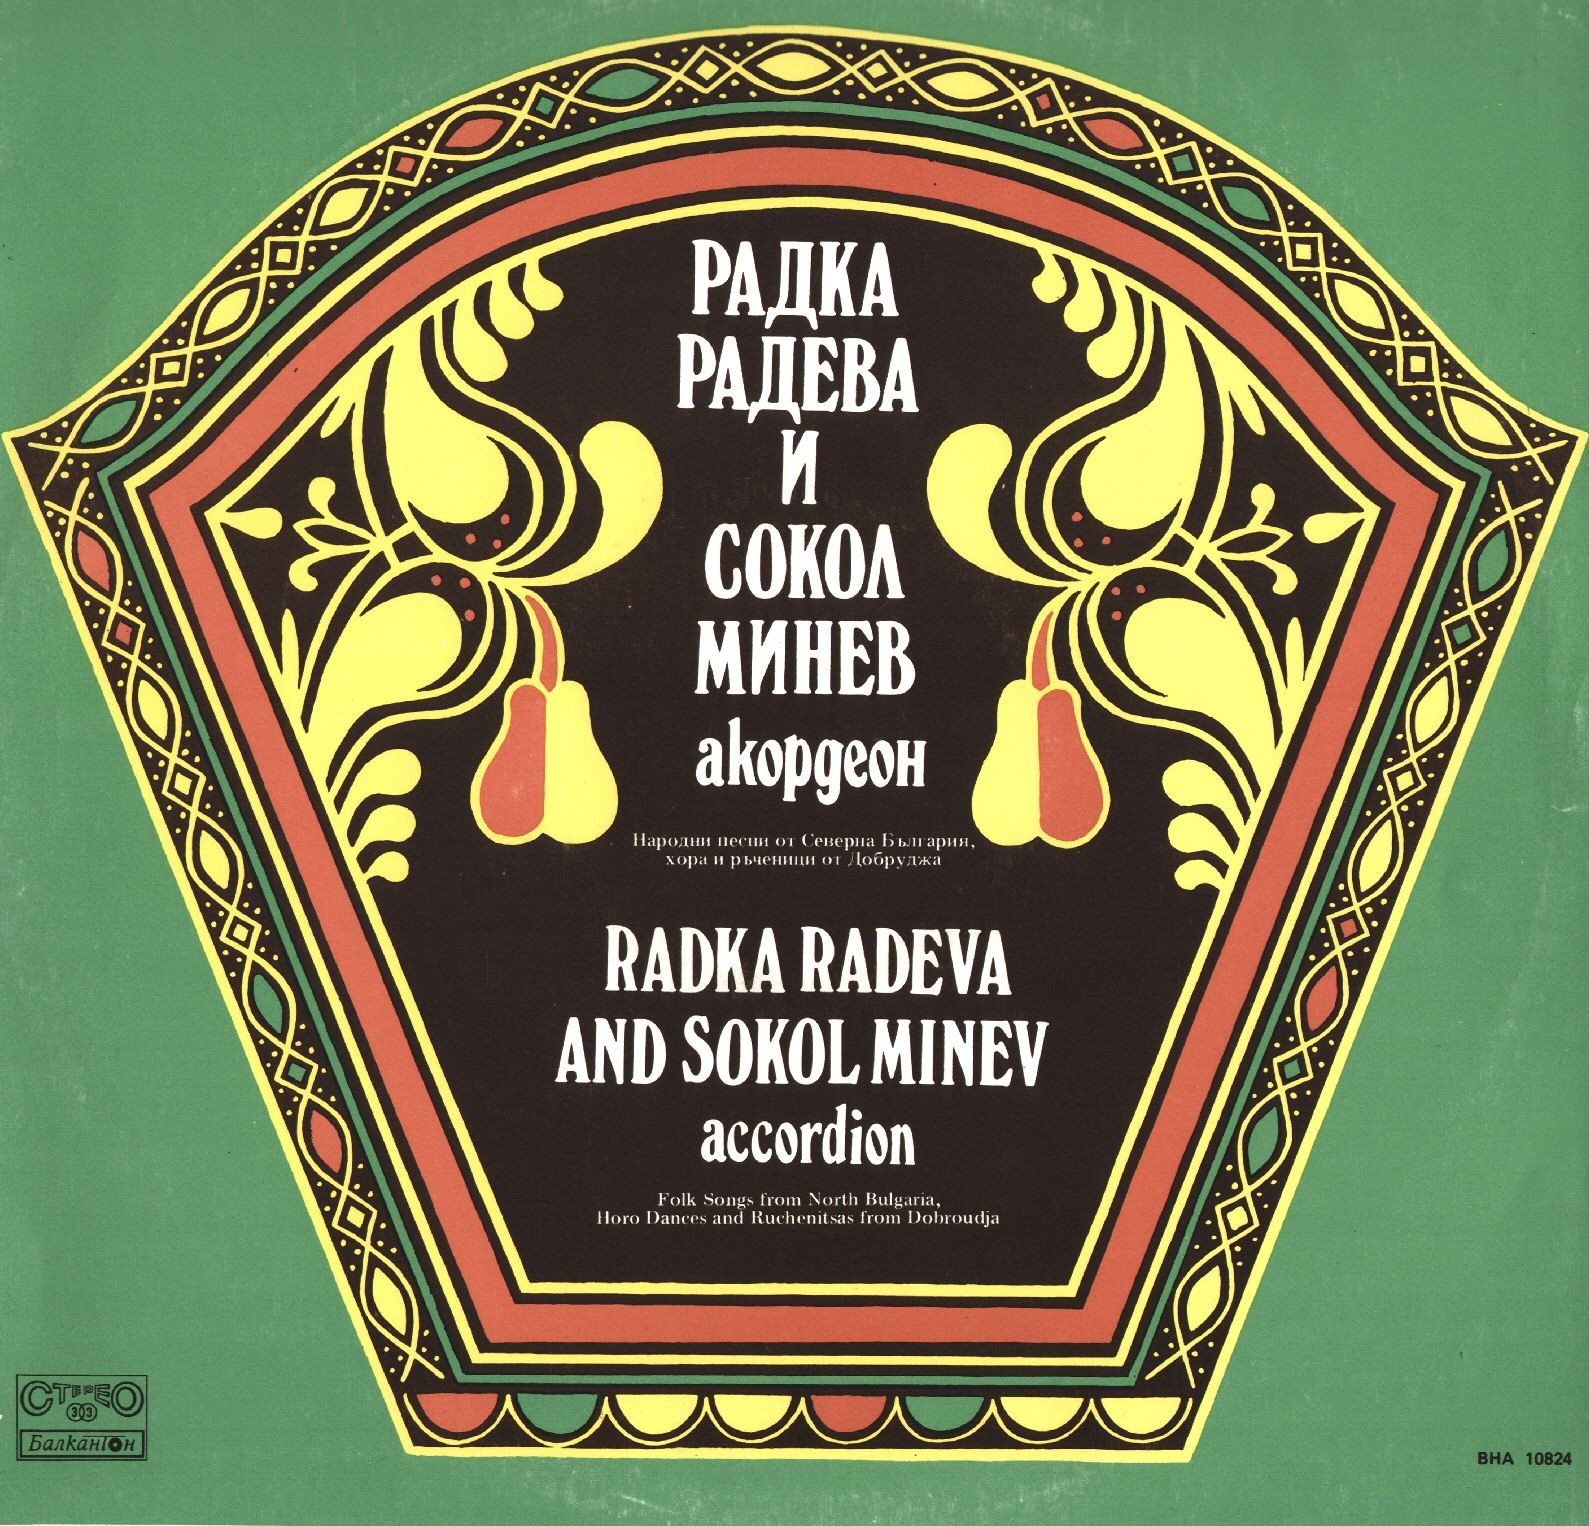 Народни песни от Северна България, хора и ръченици от Добруджа. Пее Радка Радева и Сокол Минев (акордеон)